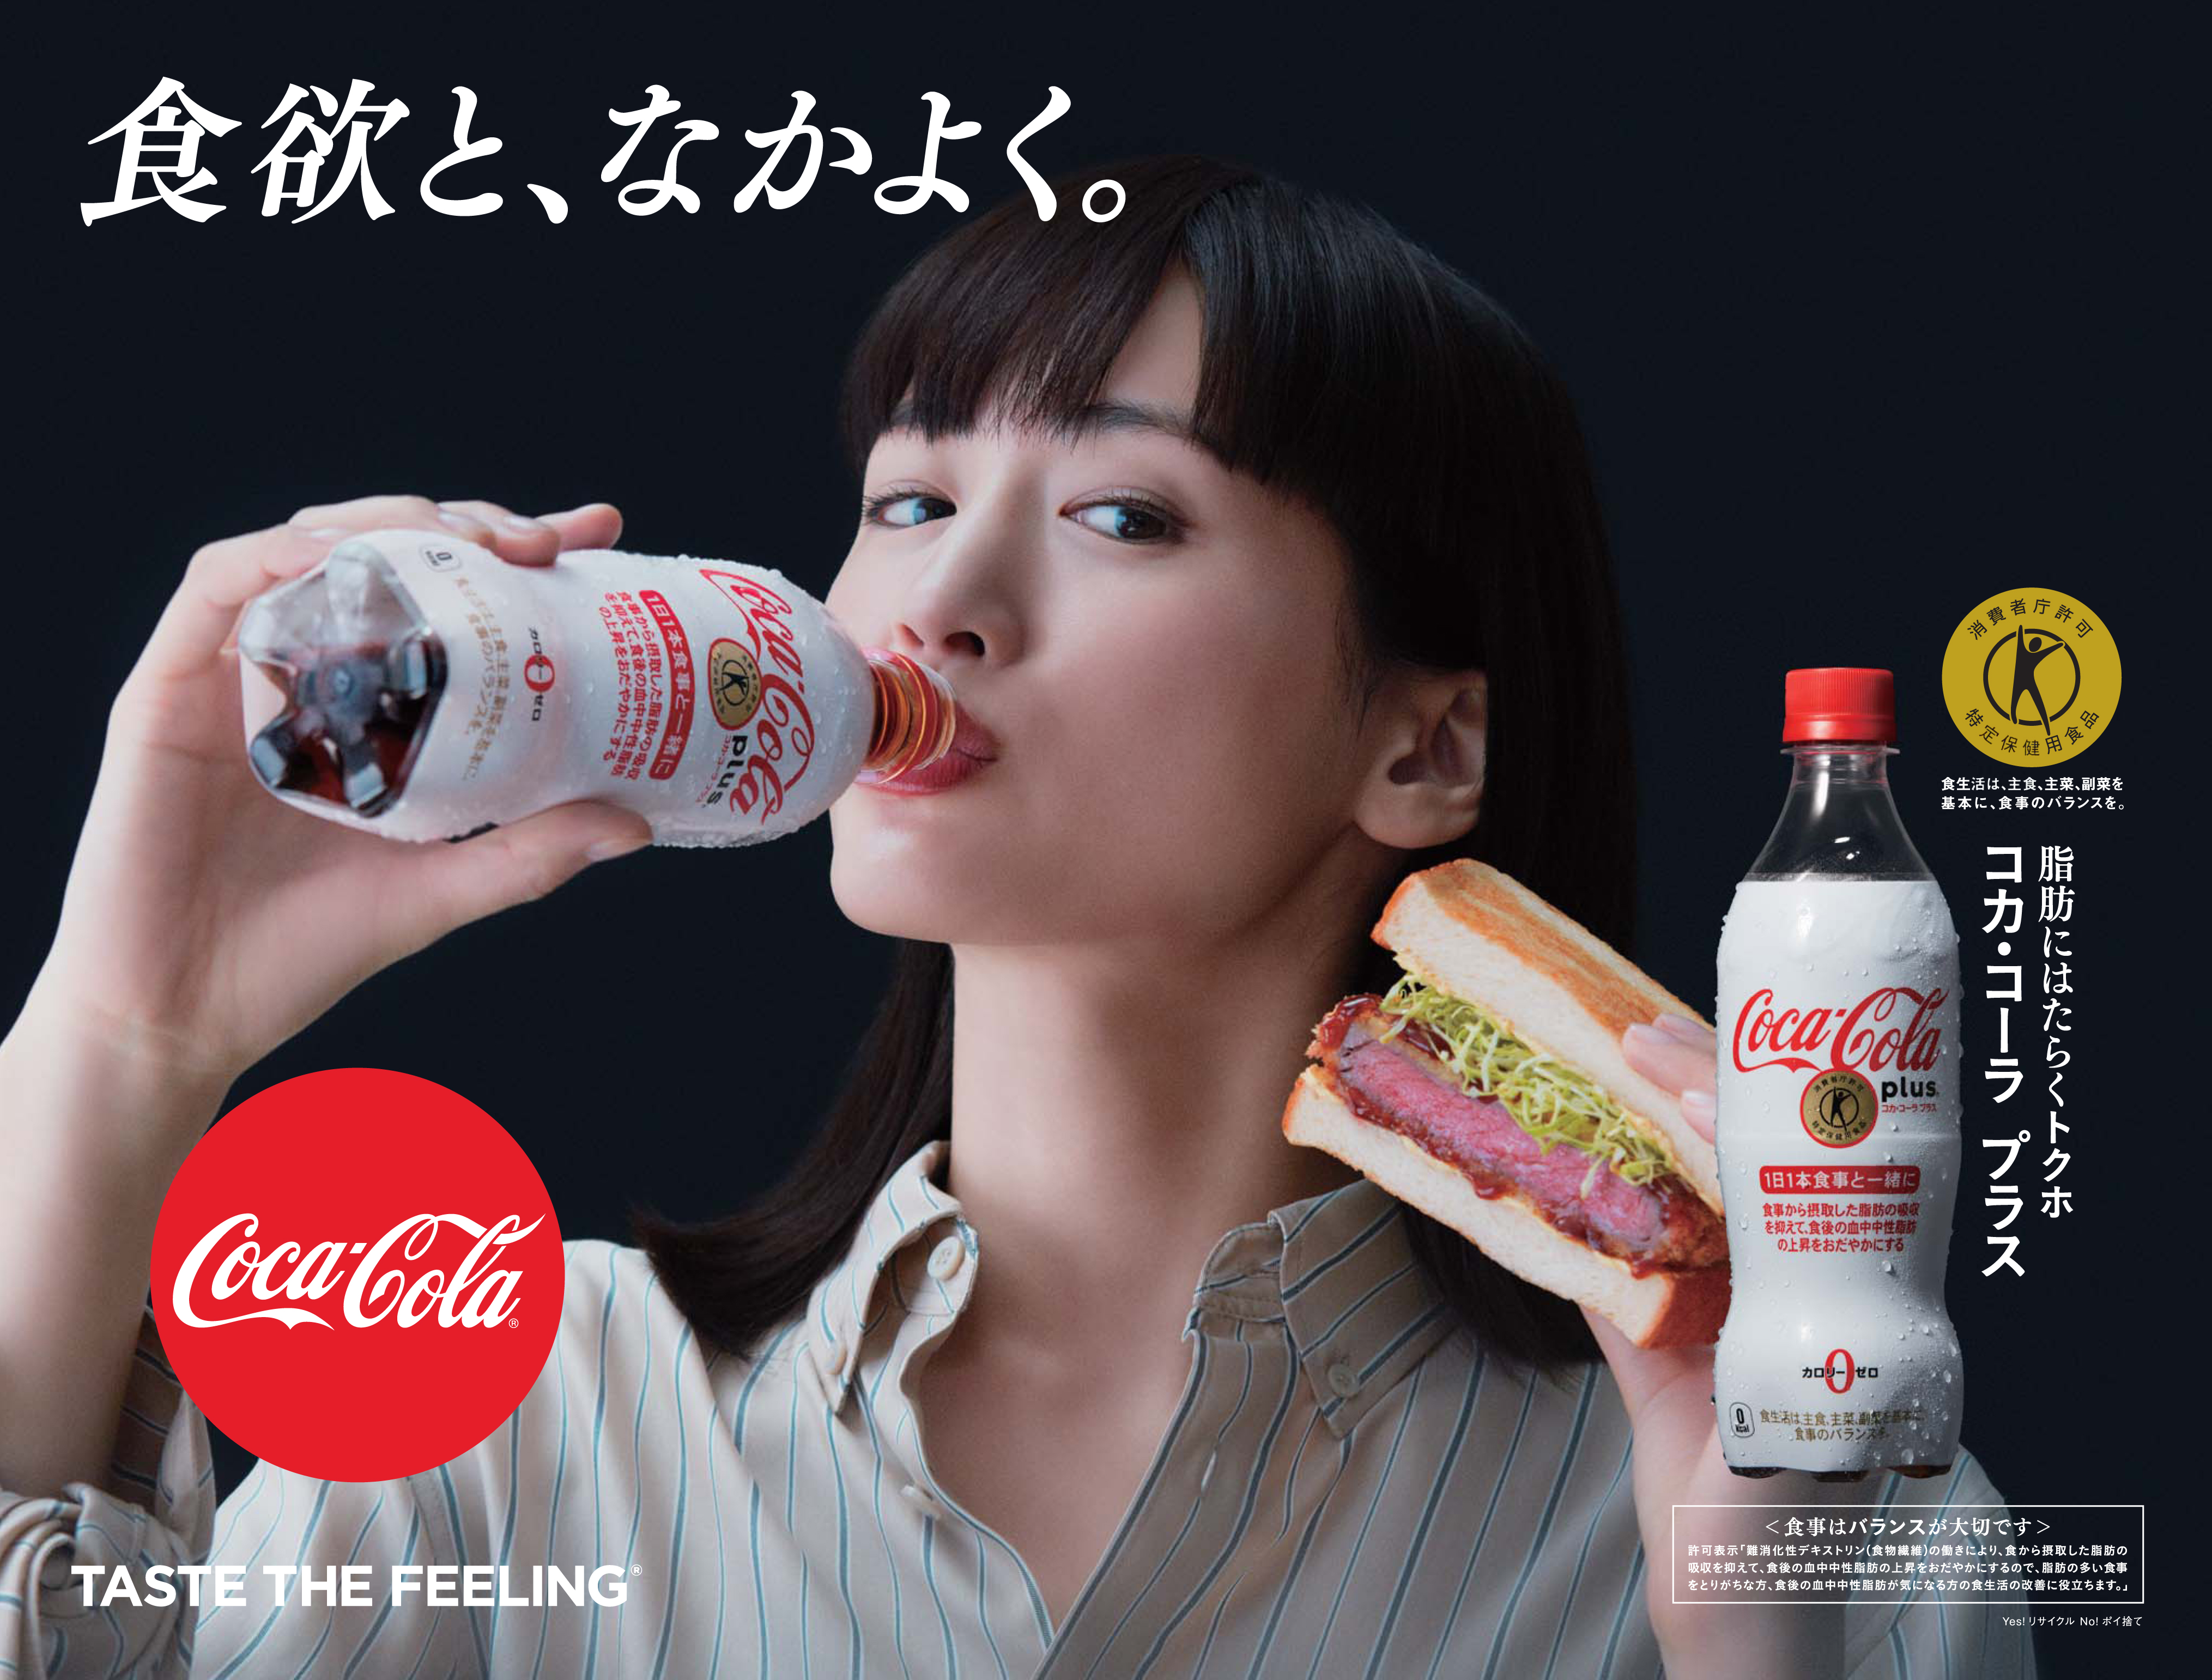 1月28日 月 から コカ コーラ プラス 新キャンペーン開始 おいしく食事しながら 脂肪にはたらくトクホのコーク 日本コカ コーラ 株式会社のプレスリリース